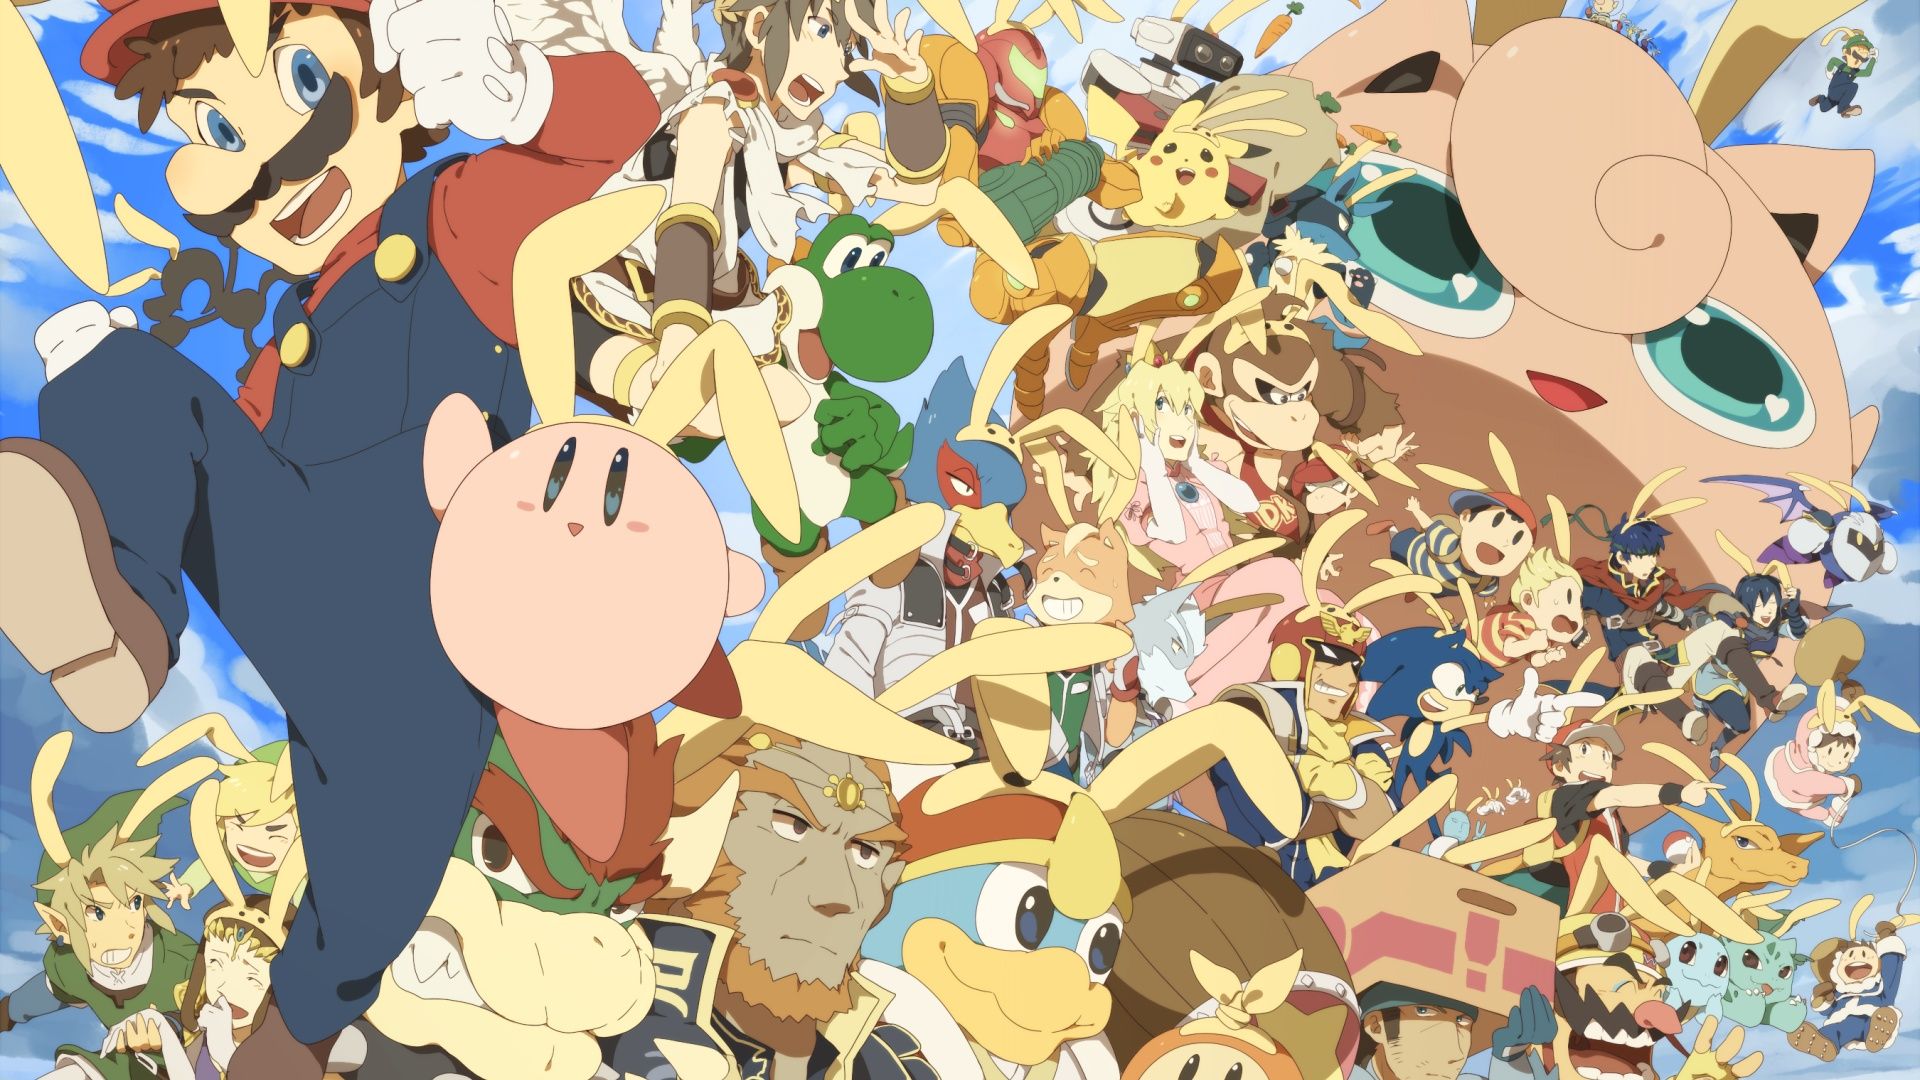 Kirby, Link, Mario, Ivysaur, Pikachu, Ganondorf, Samus Aran